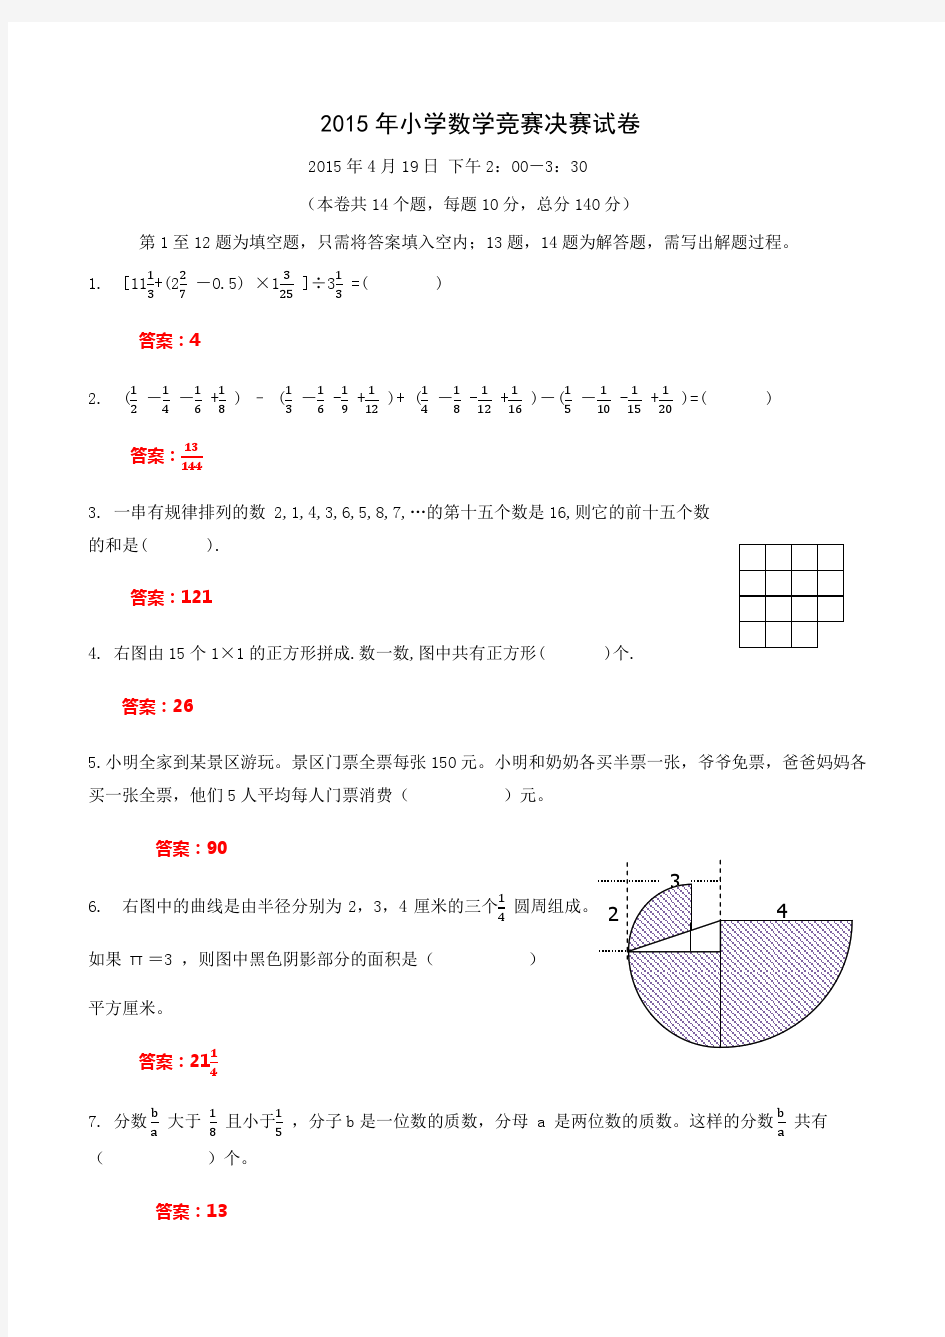 2015年小学数学竞赛(国奥)决赛试卷